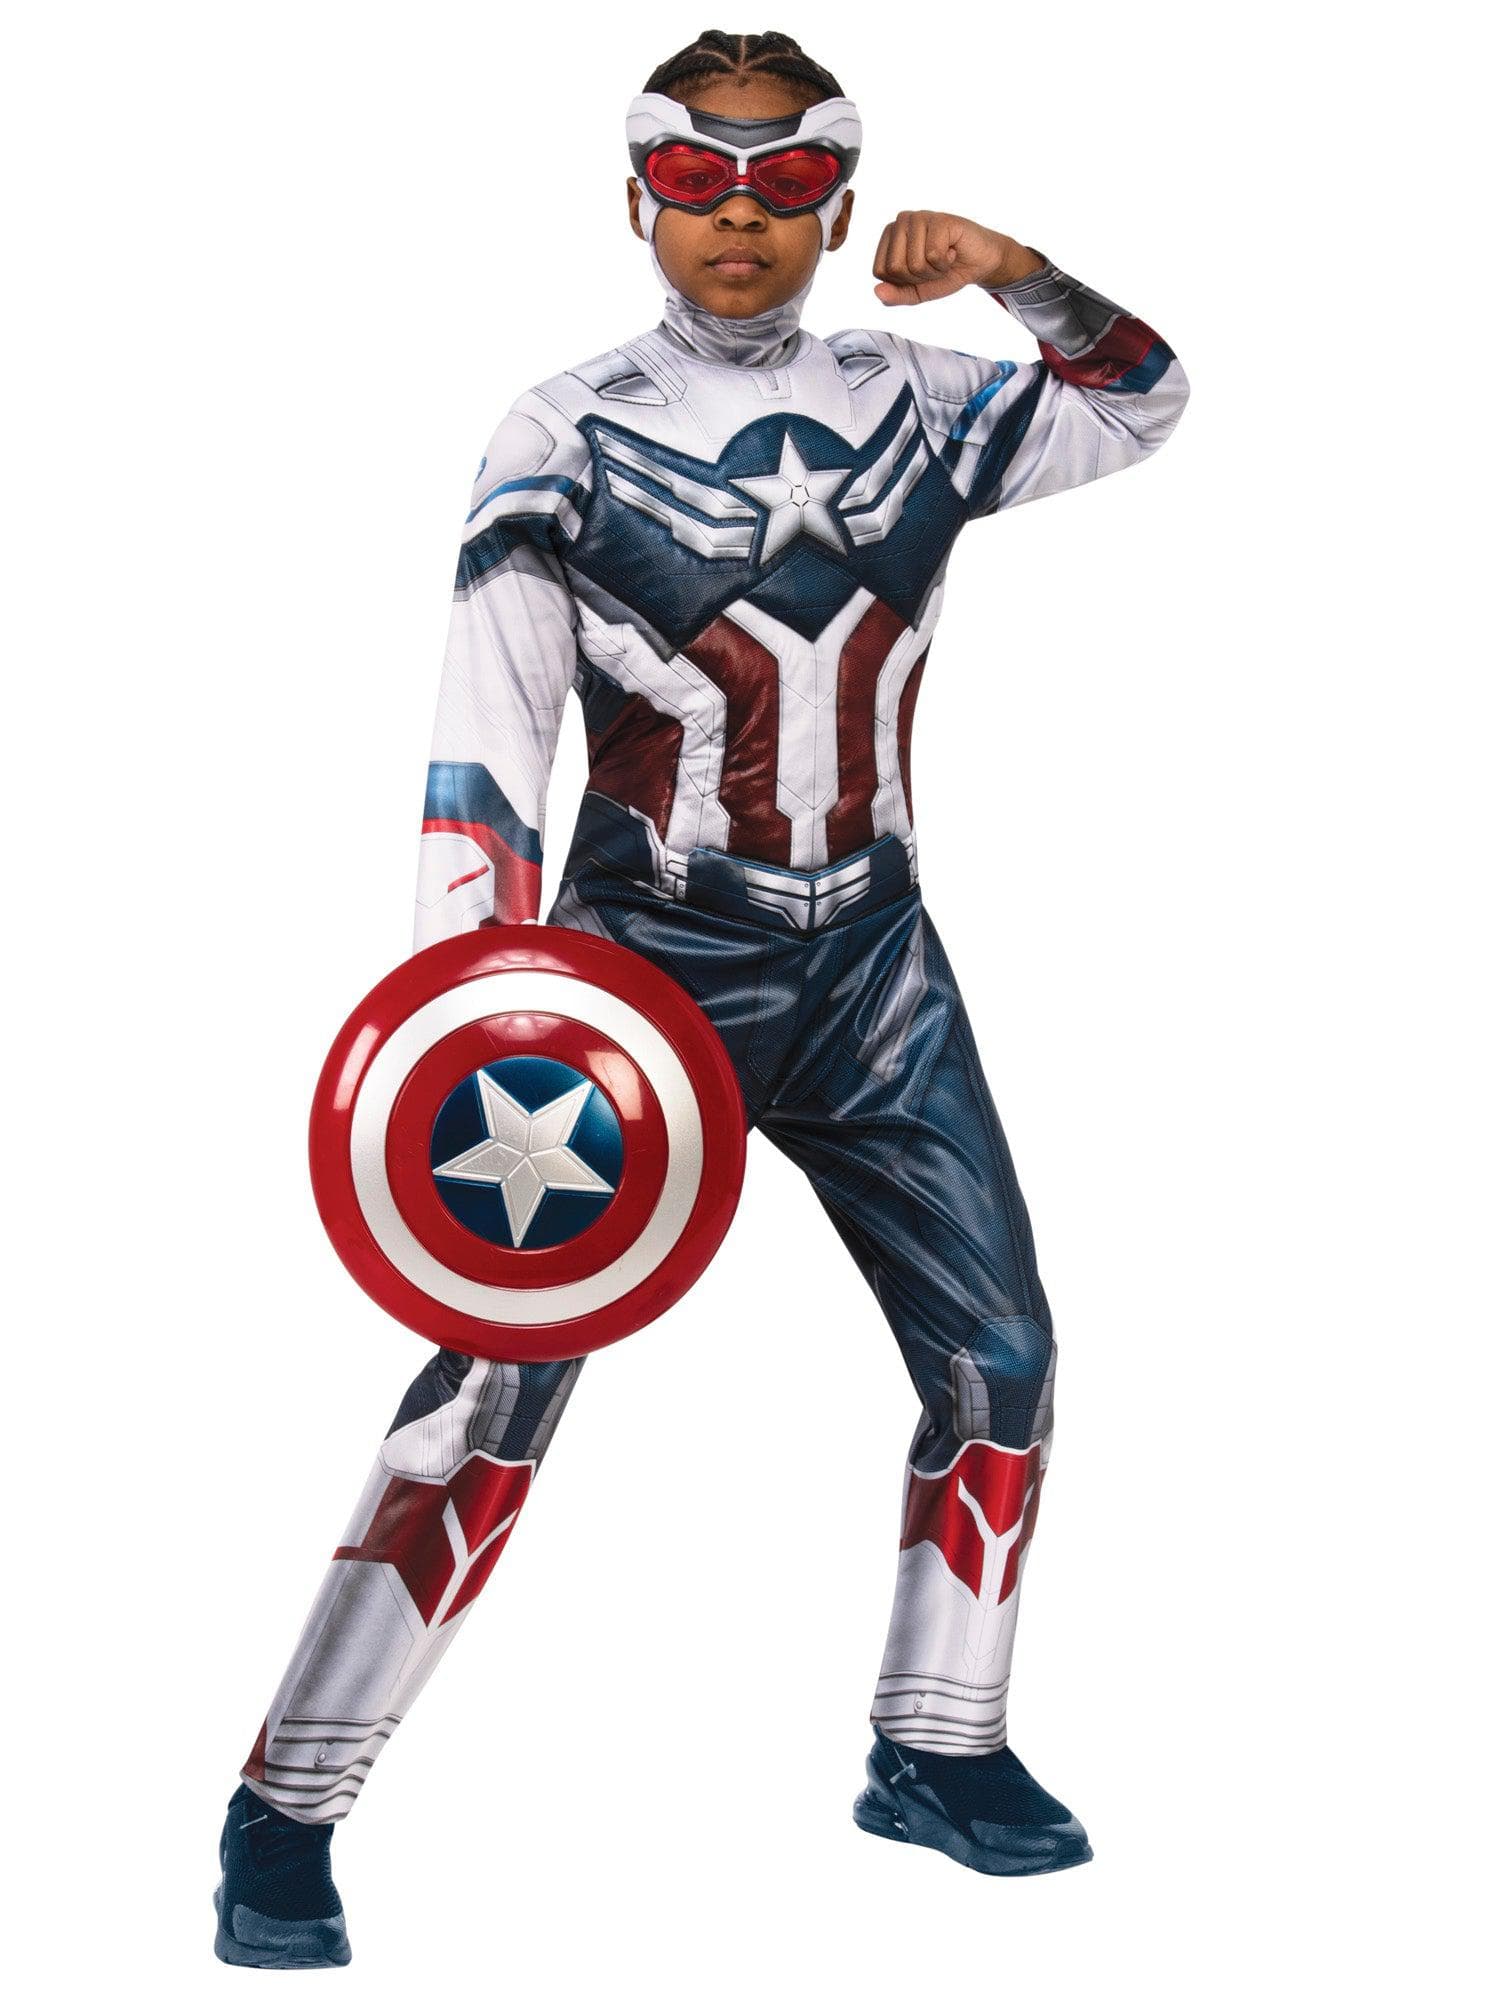 Avengers: Captain America Child Costume - costumes.com